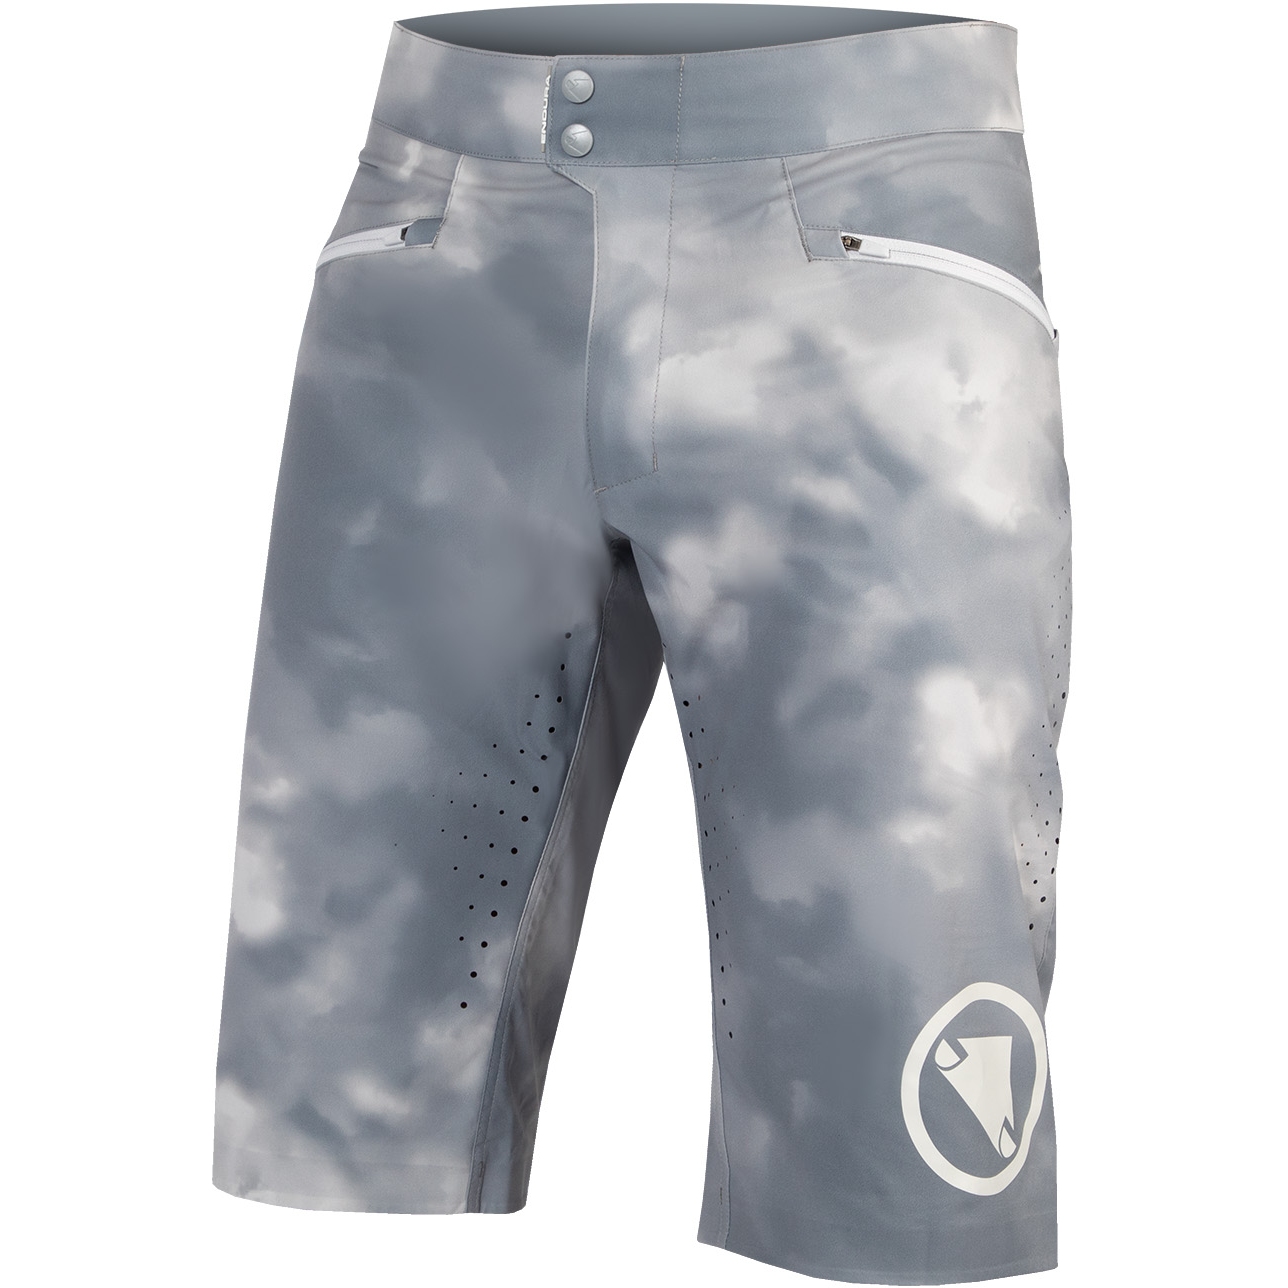 Productfoto van Endura SingleTrack Lite Shorts Heren - grijs